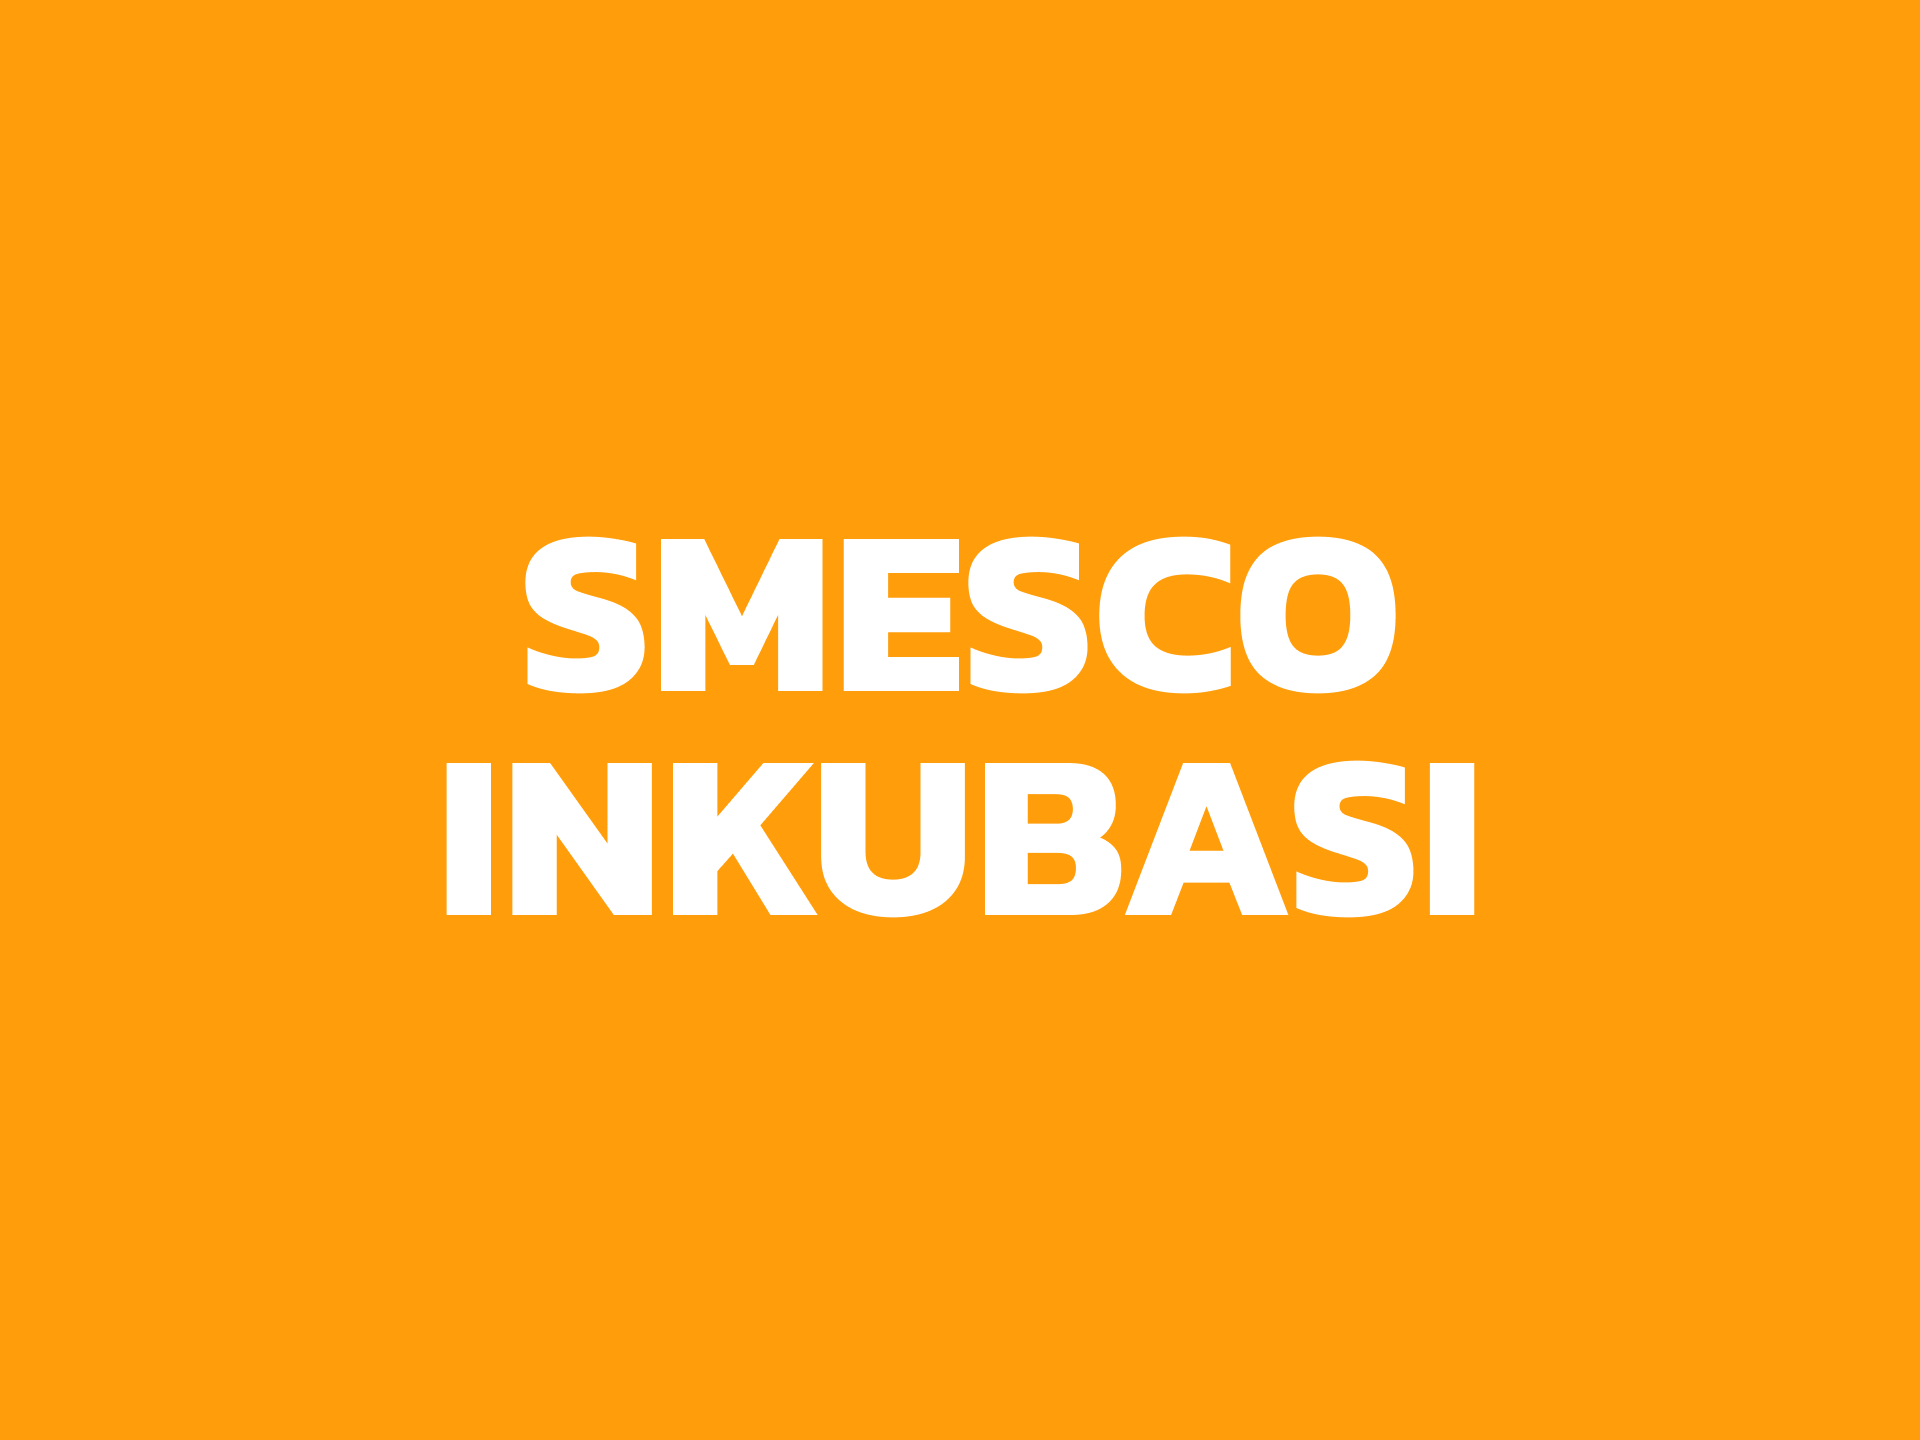 SMESCO INKUBASI